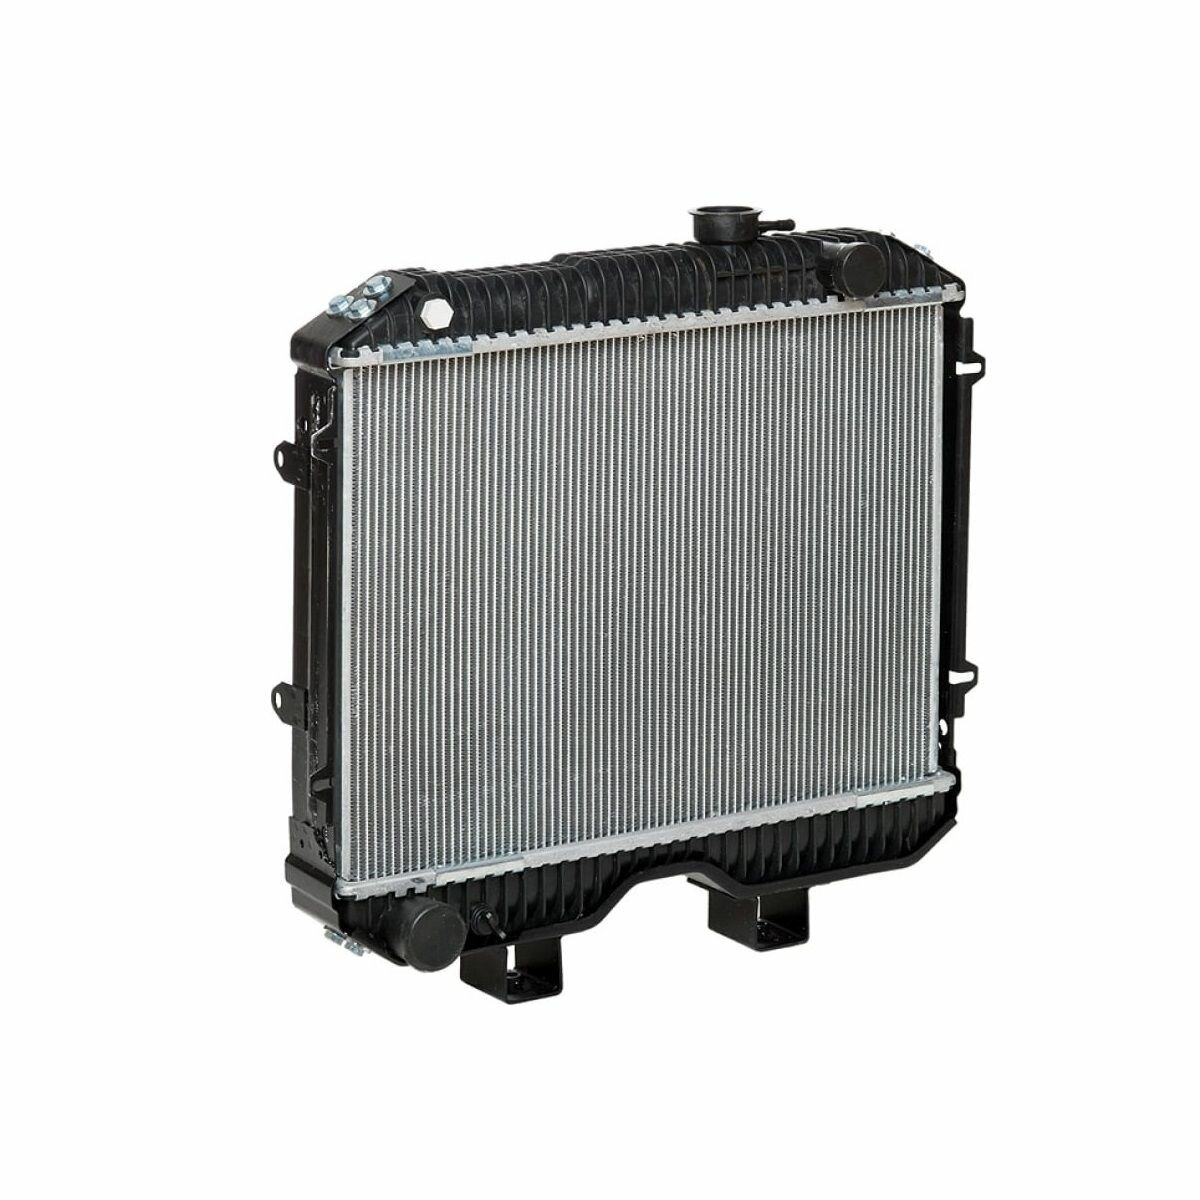 Радиатор охлаждения для а/м УАЗ 3160-3163 с двиг. УМЗ-421, 409 (паяный) (Luzar LRc 0360b)